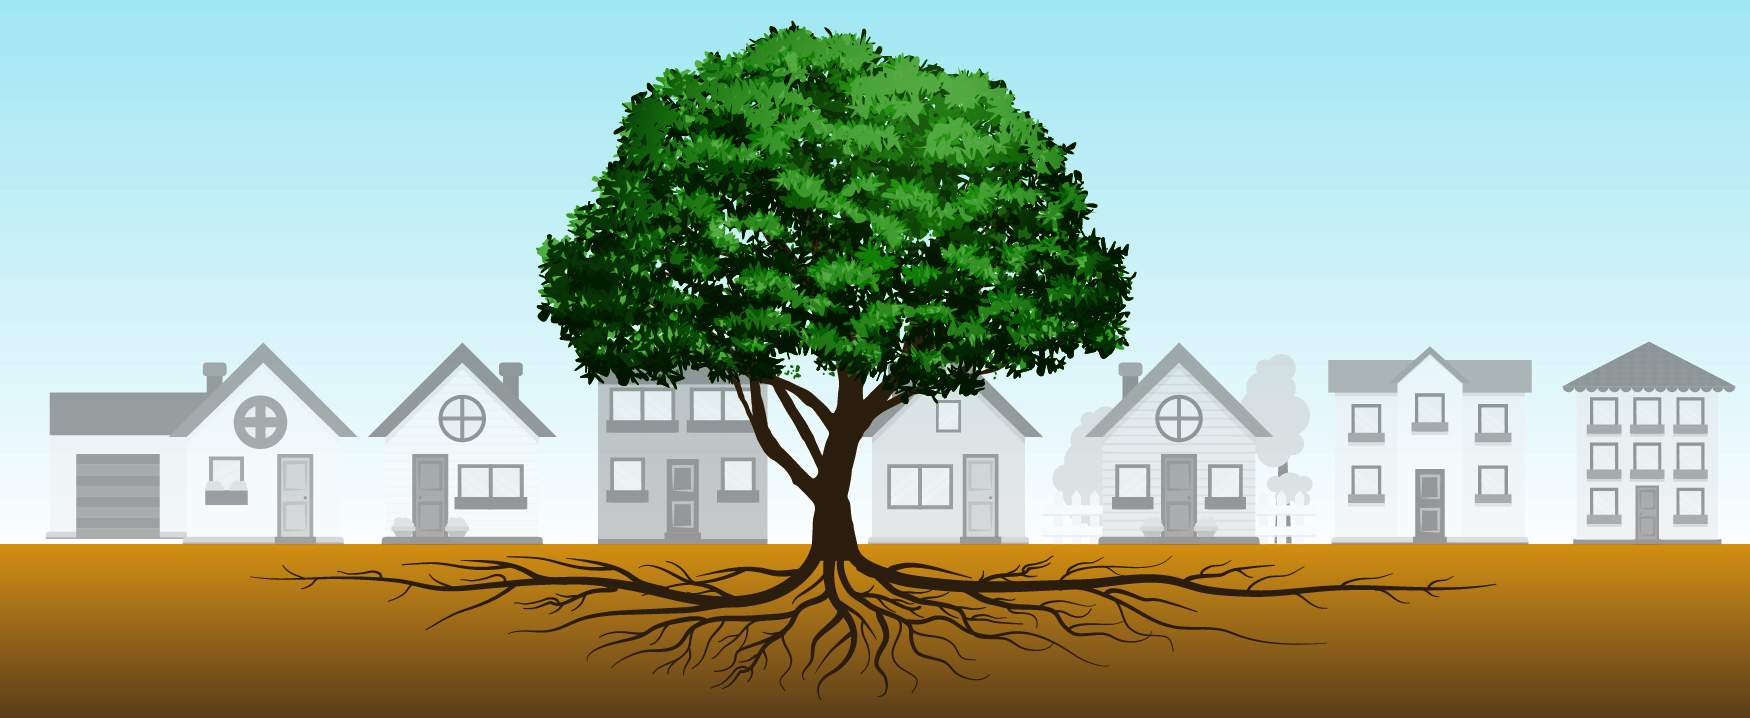 Un arbre pousse au centre d'une rangée de maisons. Les racines de l'arbre s'étendent sous terre, étendant la largeur de la rangée de maisons dans les deux sens.